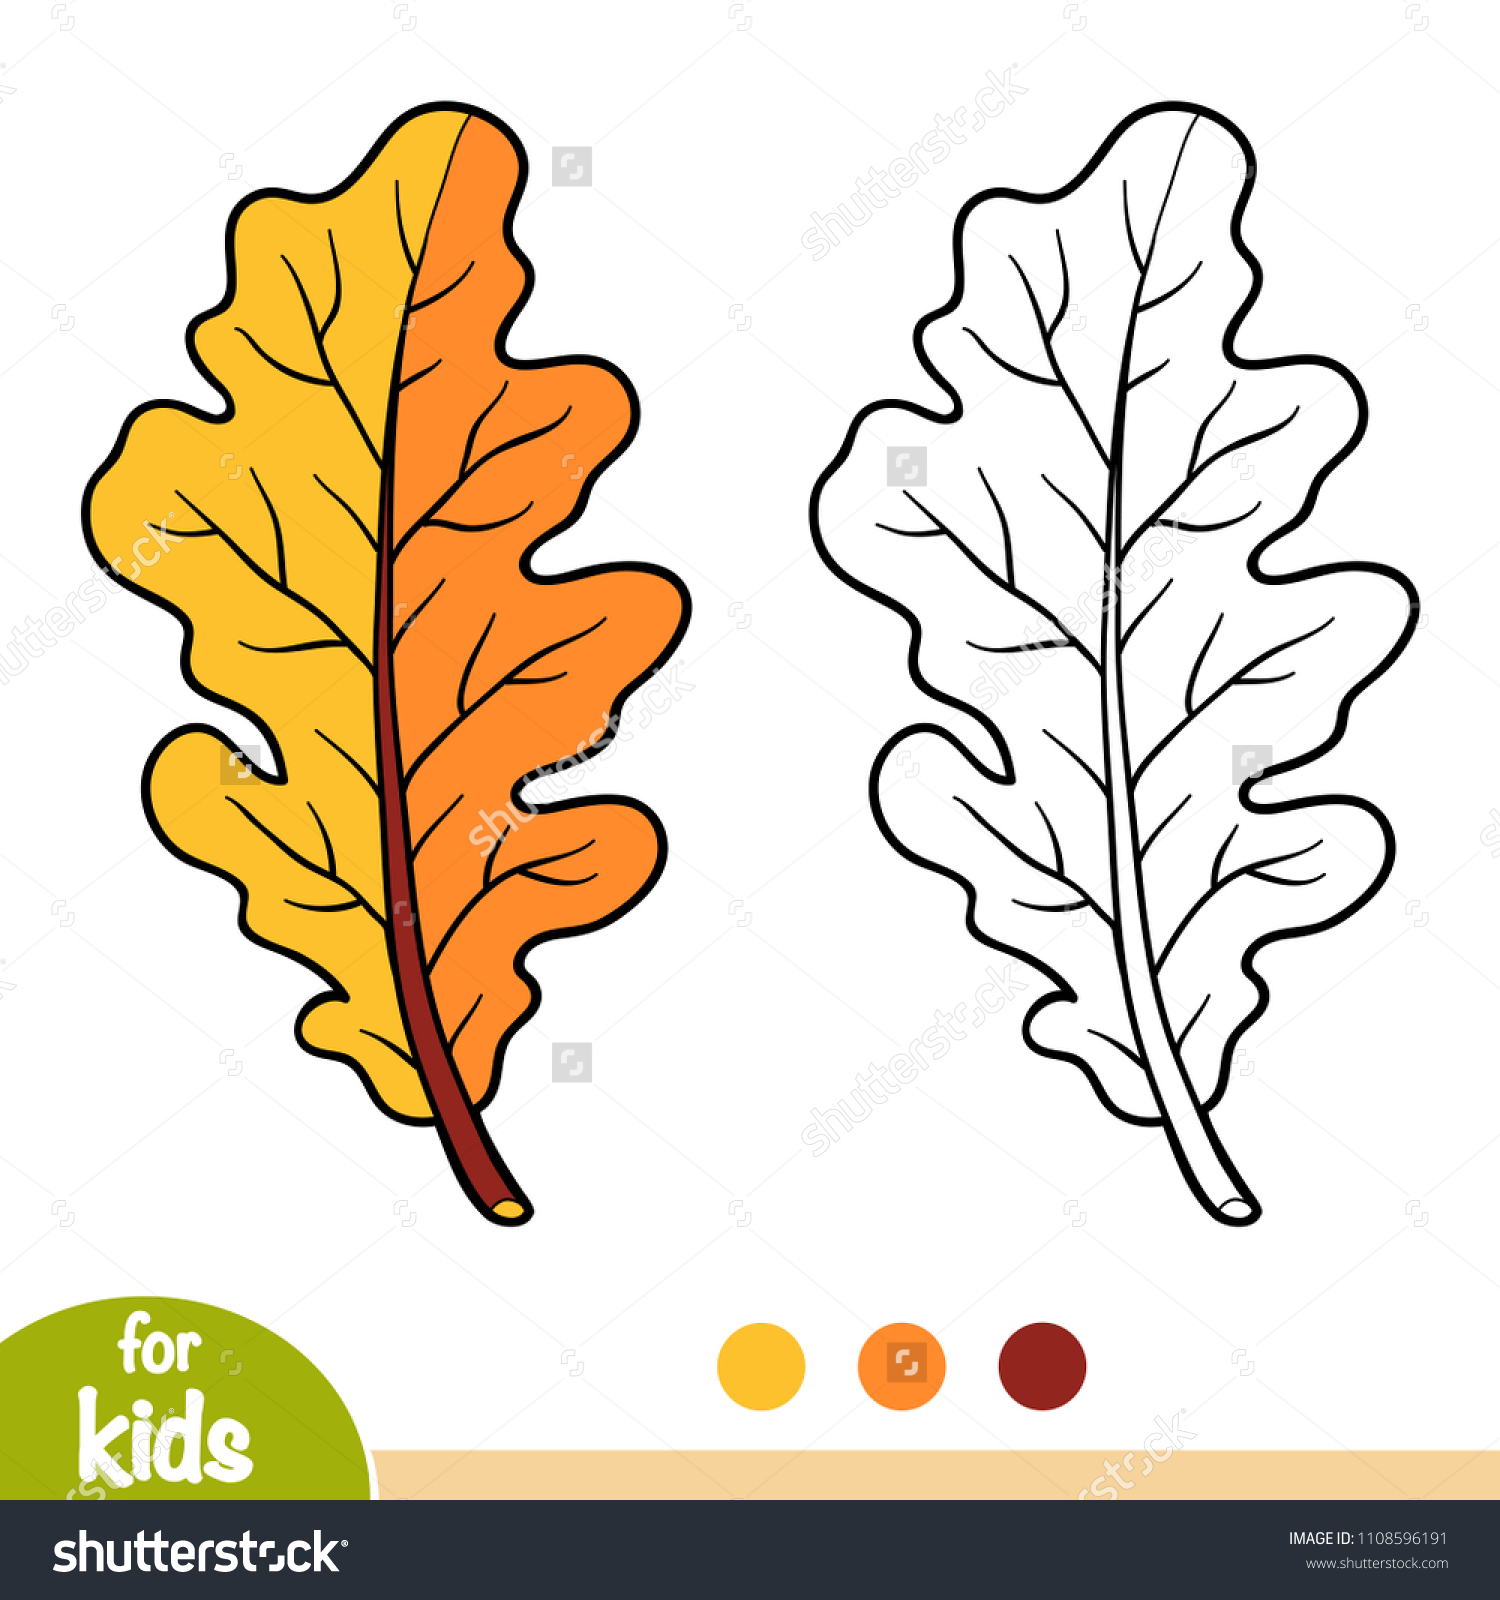 Контур листьев дуба для раскрашивания для детей